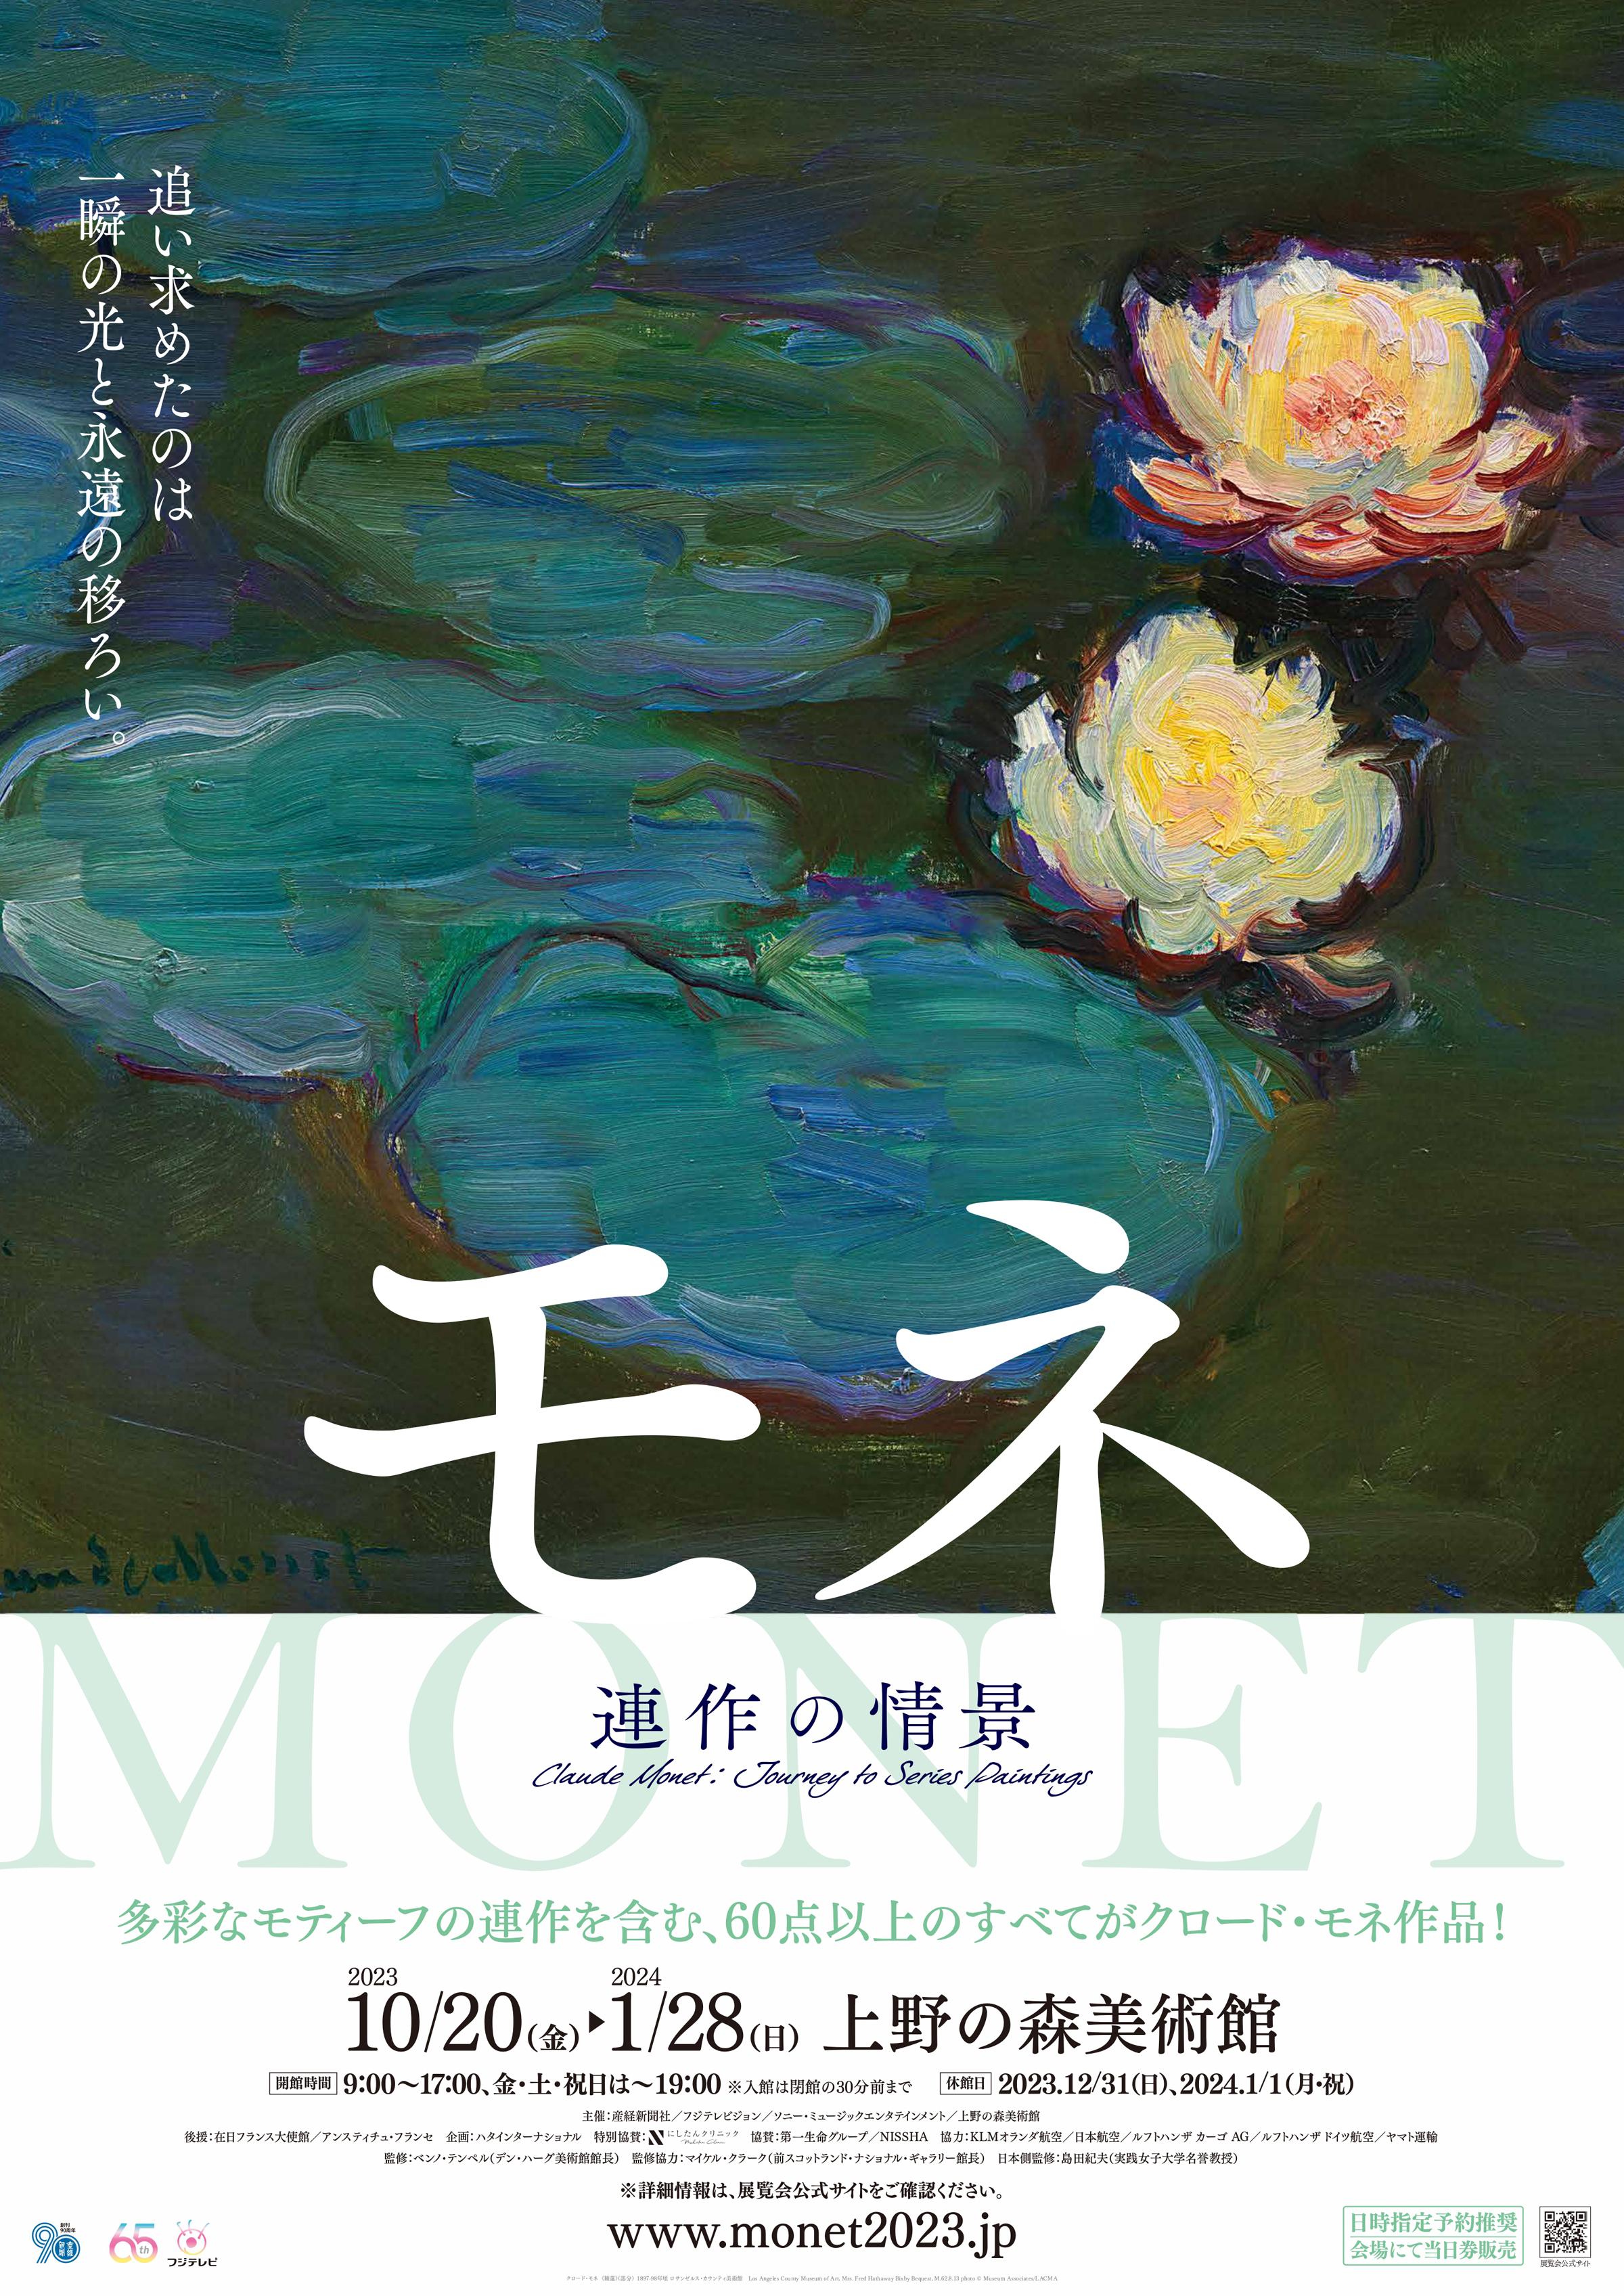 上野の森美術館「モネ 連作の情景」スペシャルチケット、9月20日発売